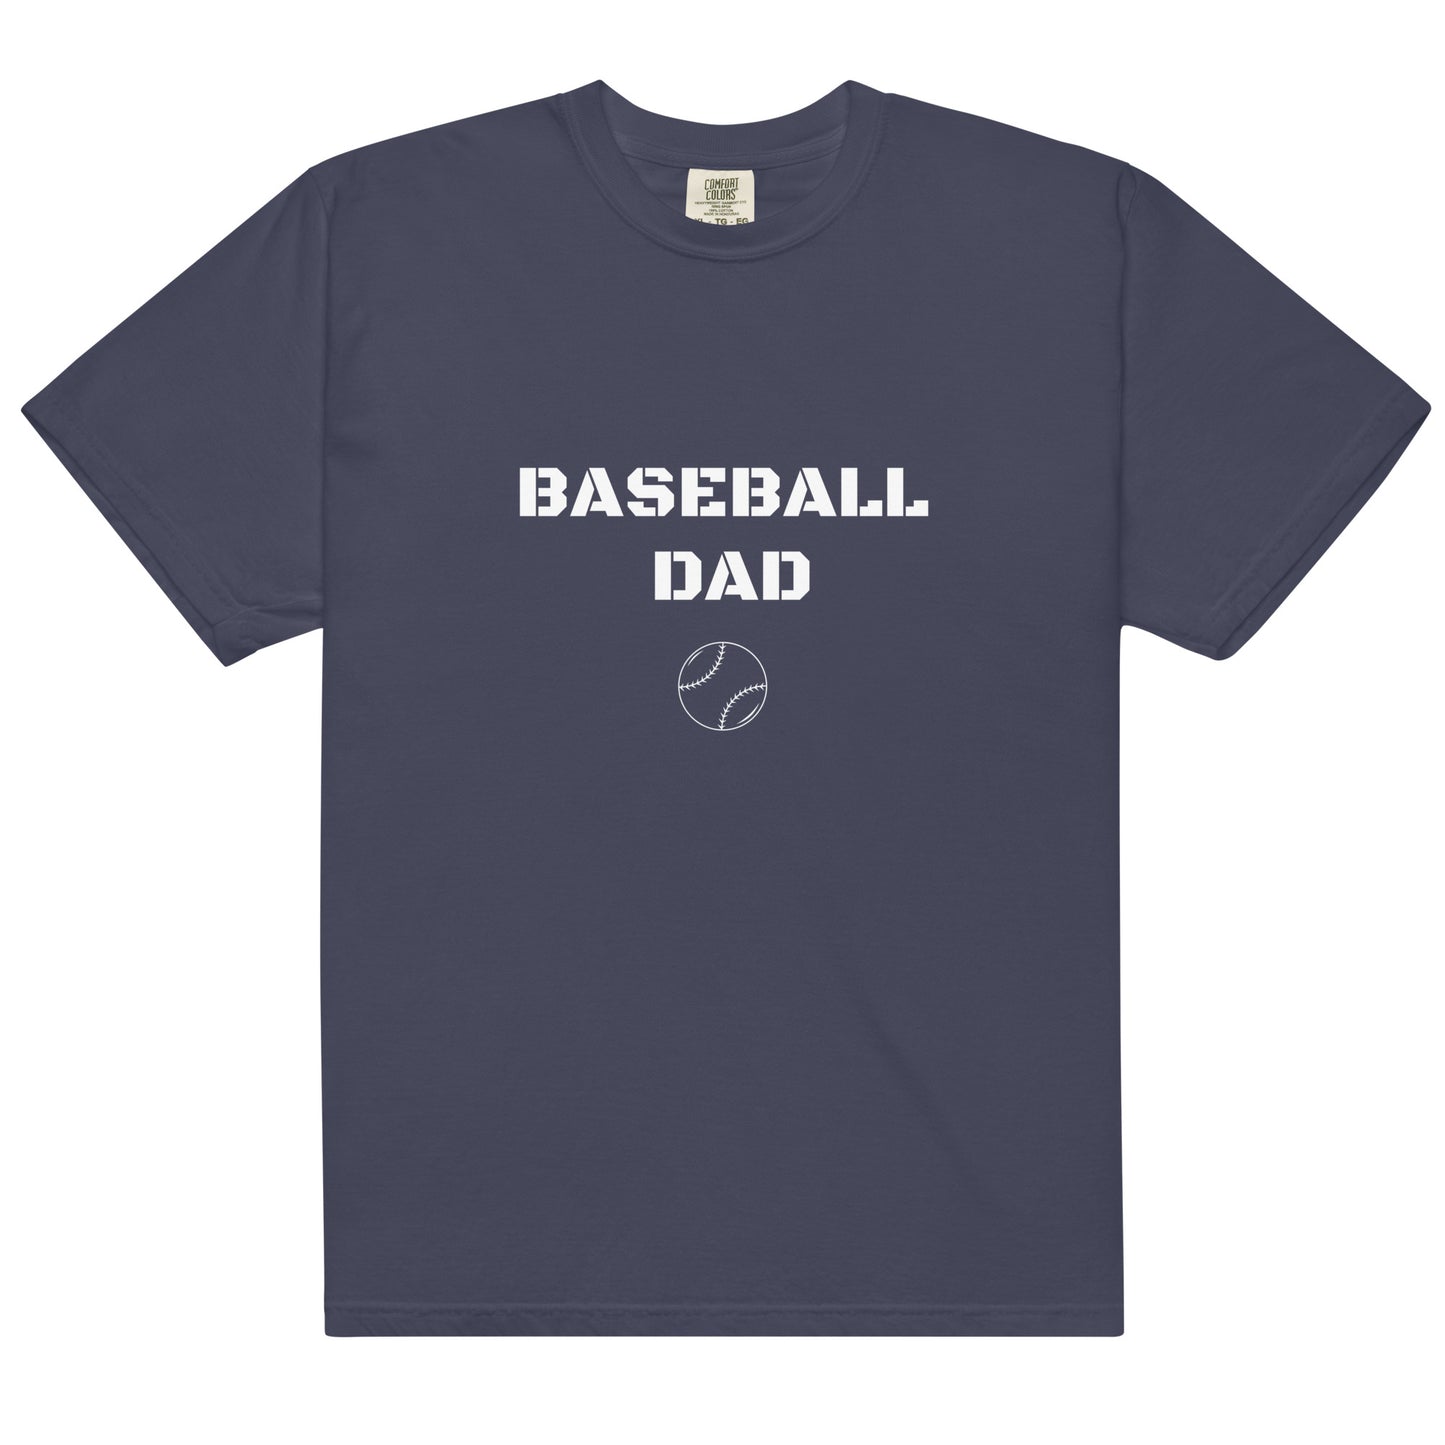 Baseball Dad Printed Tshirt